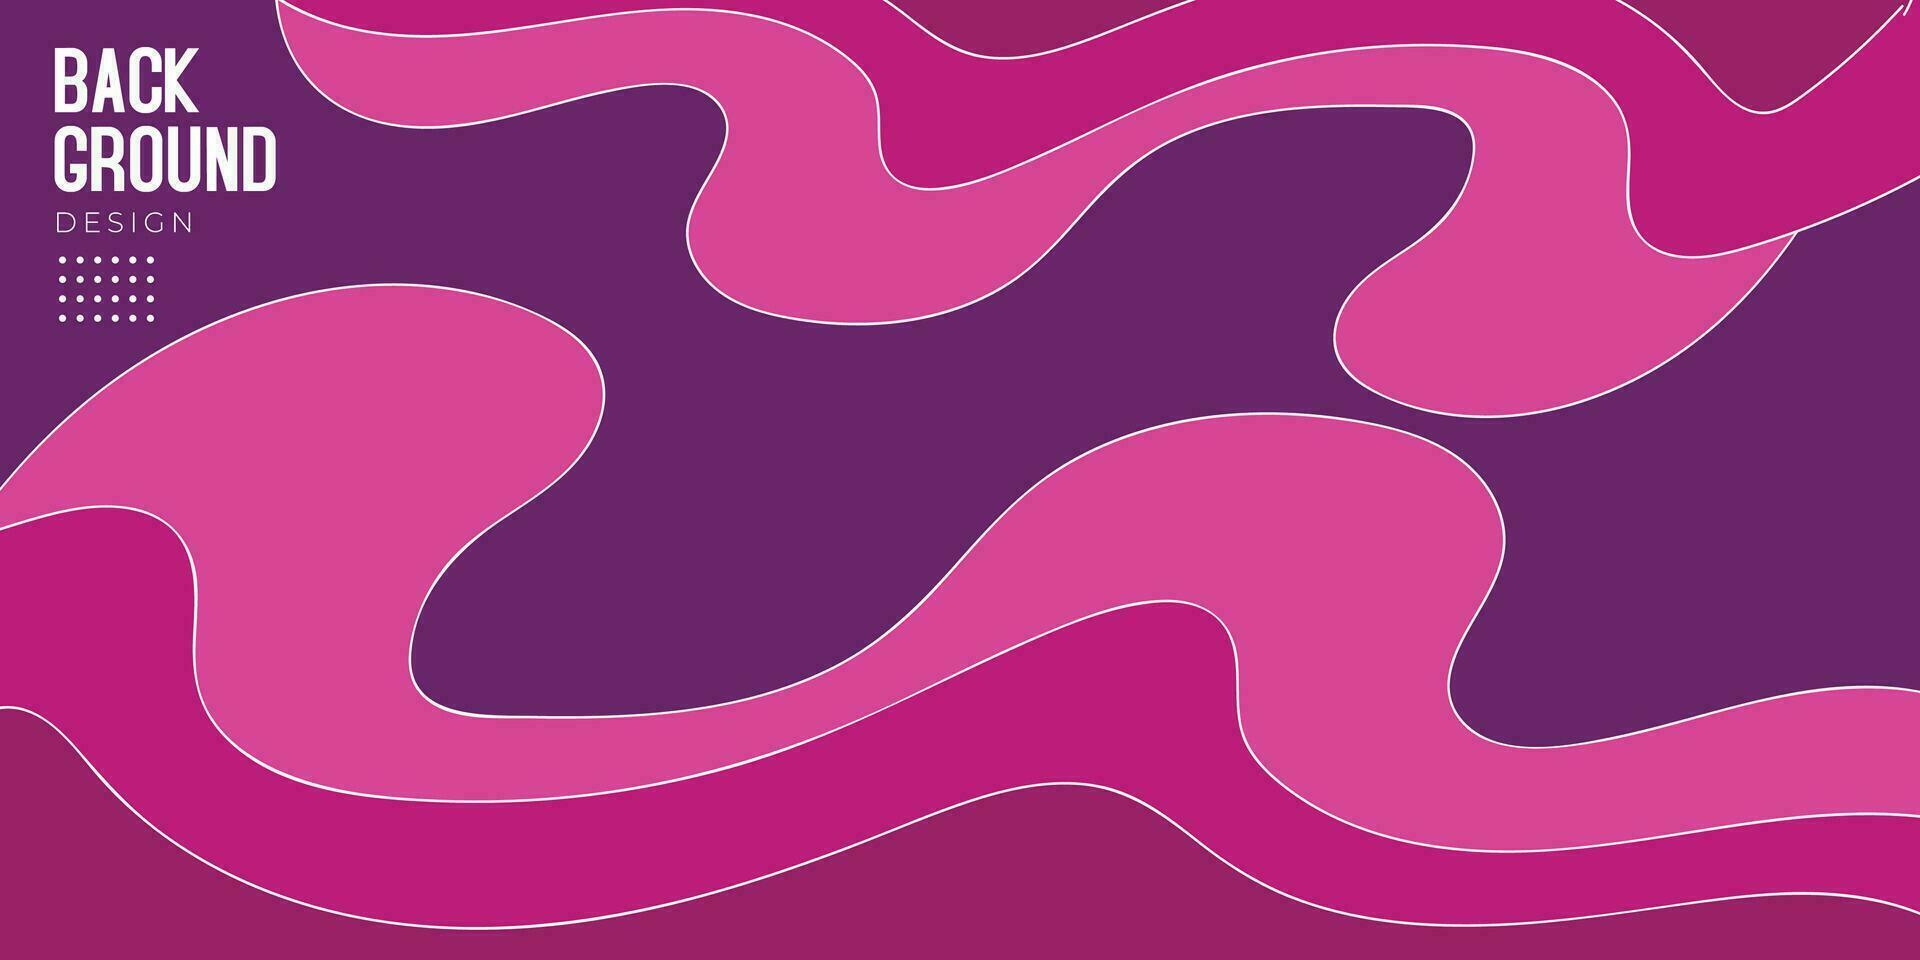 abstrakt geometrisch Hintergrund mit Rosa und lila Farben kombinieren vektor